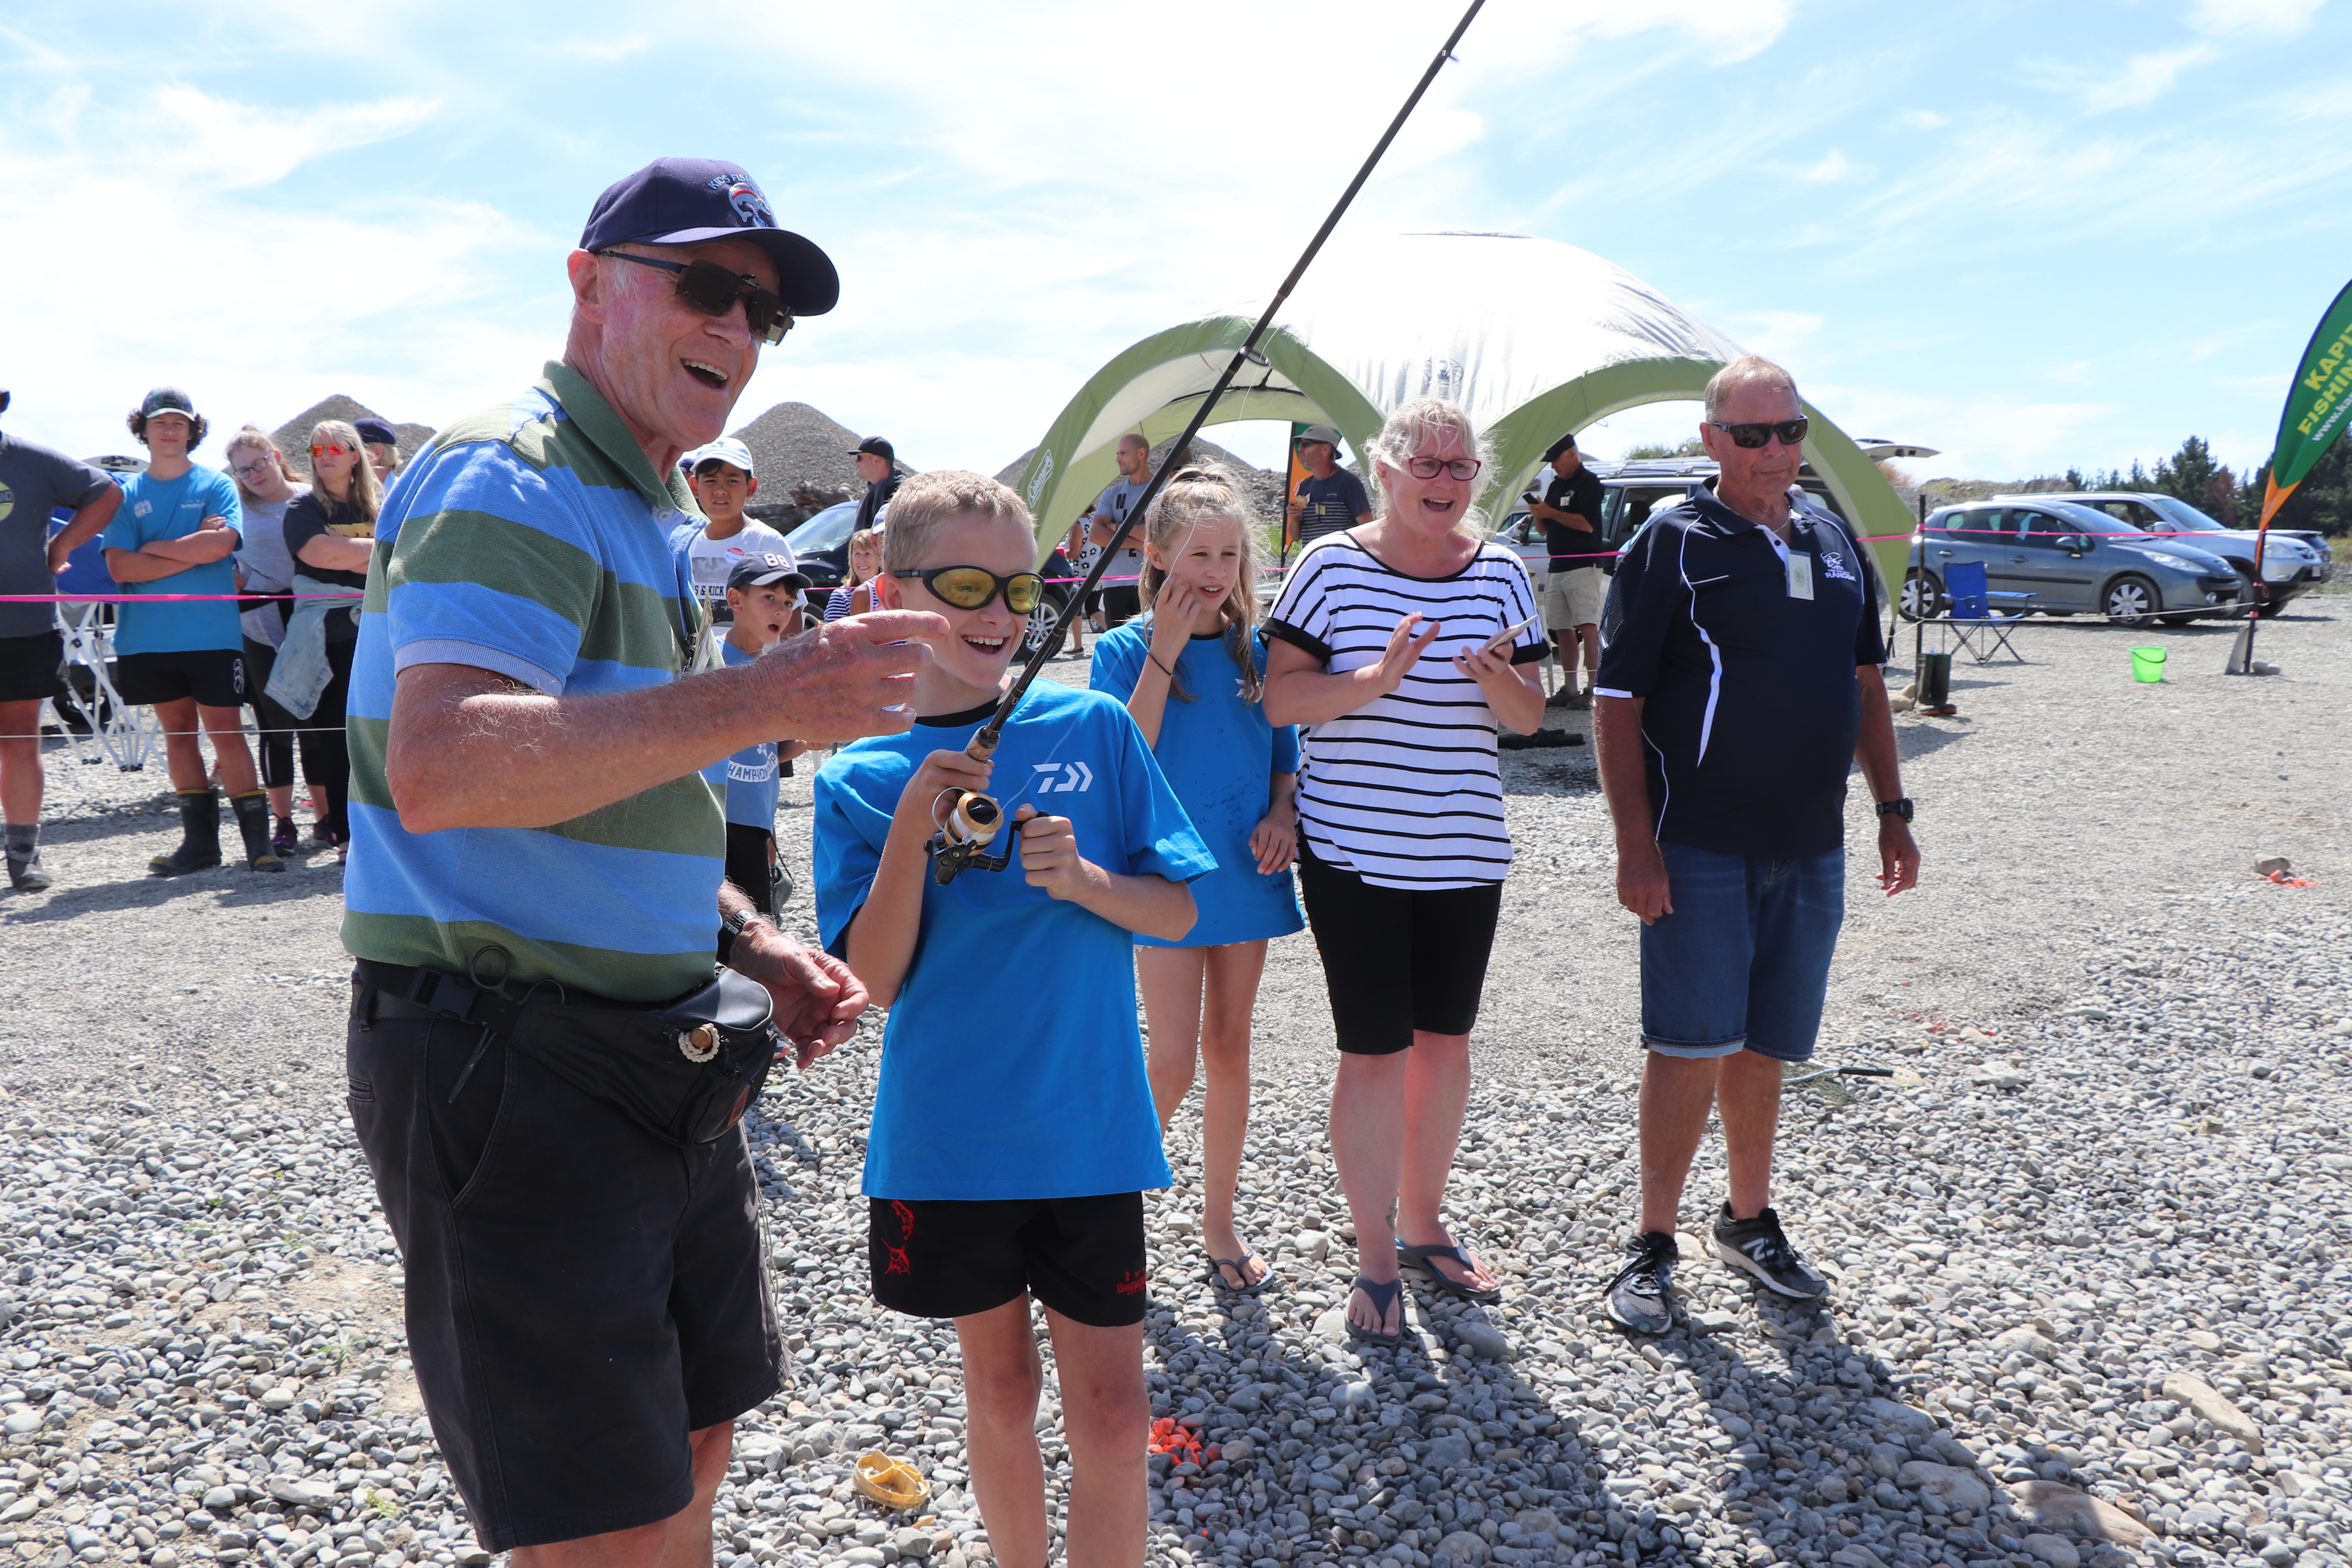 W Happy anglers at the Otaki Kids Fishing Day